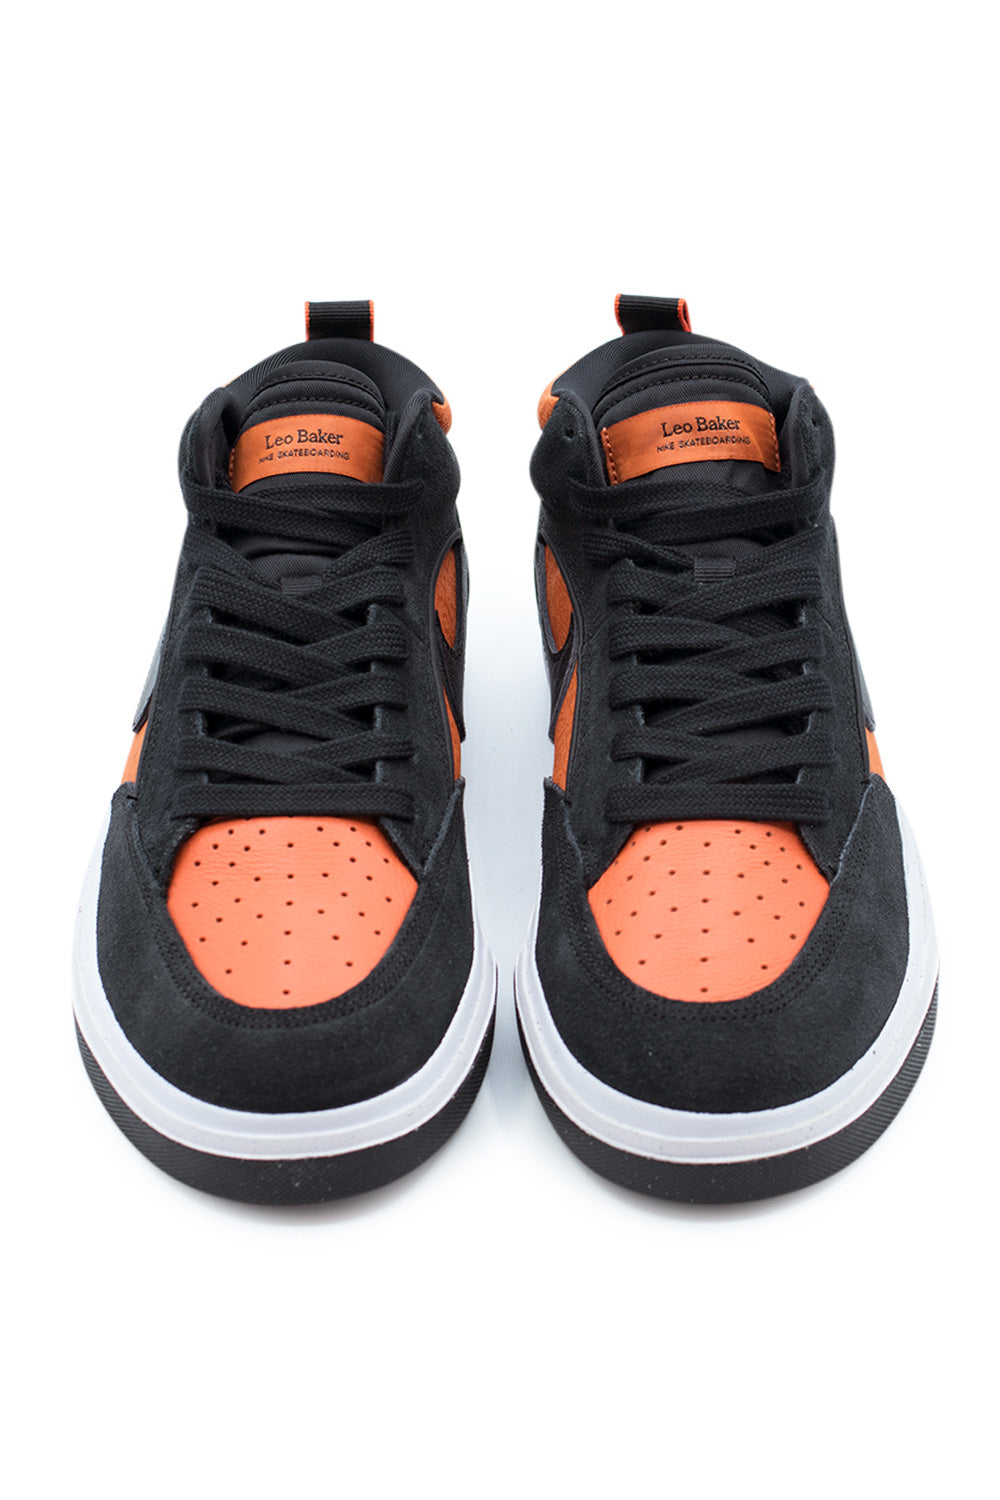 Nike SB React Leo Shoe Black / Black / Orange - BONKERS